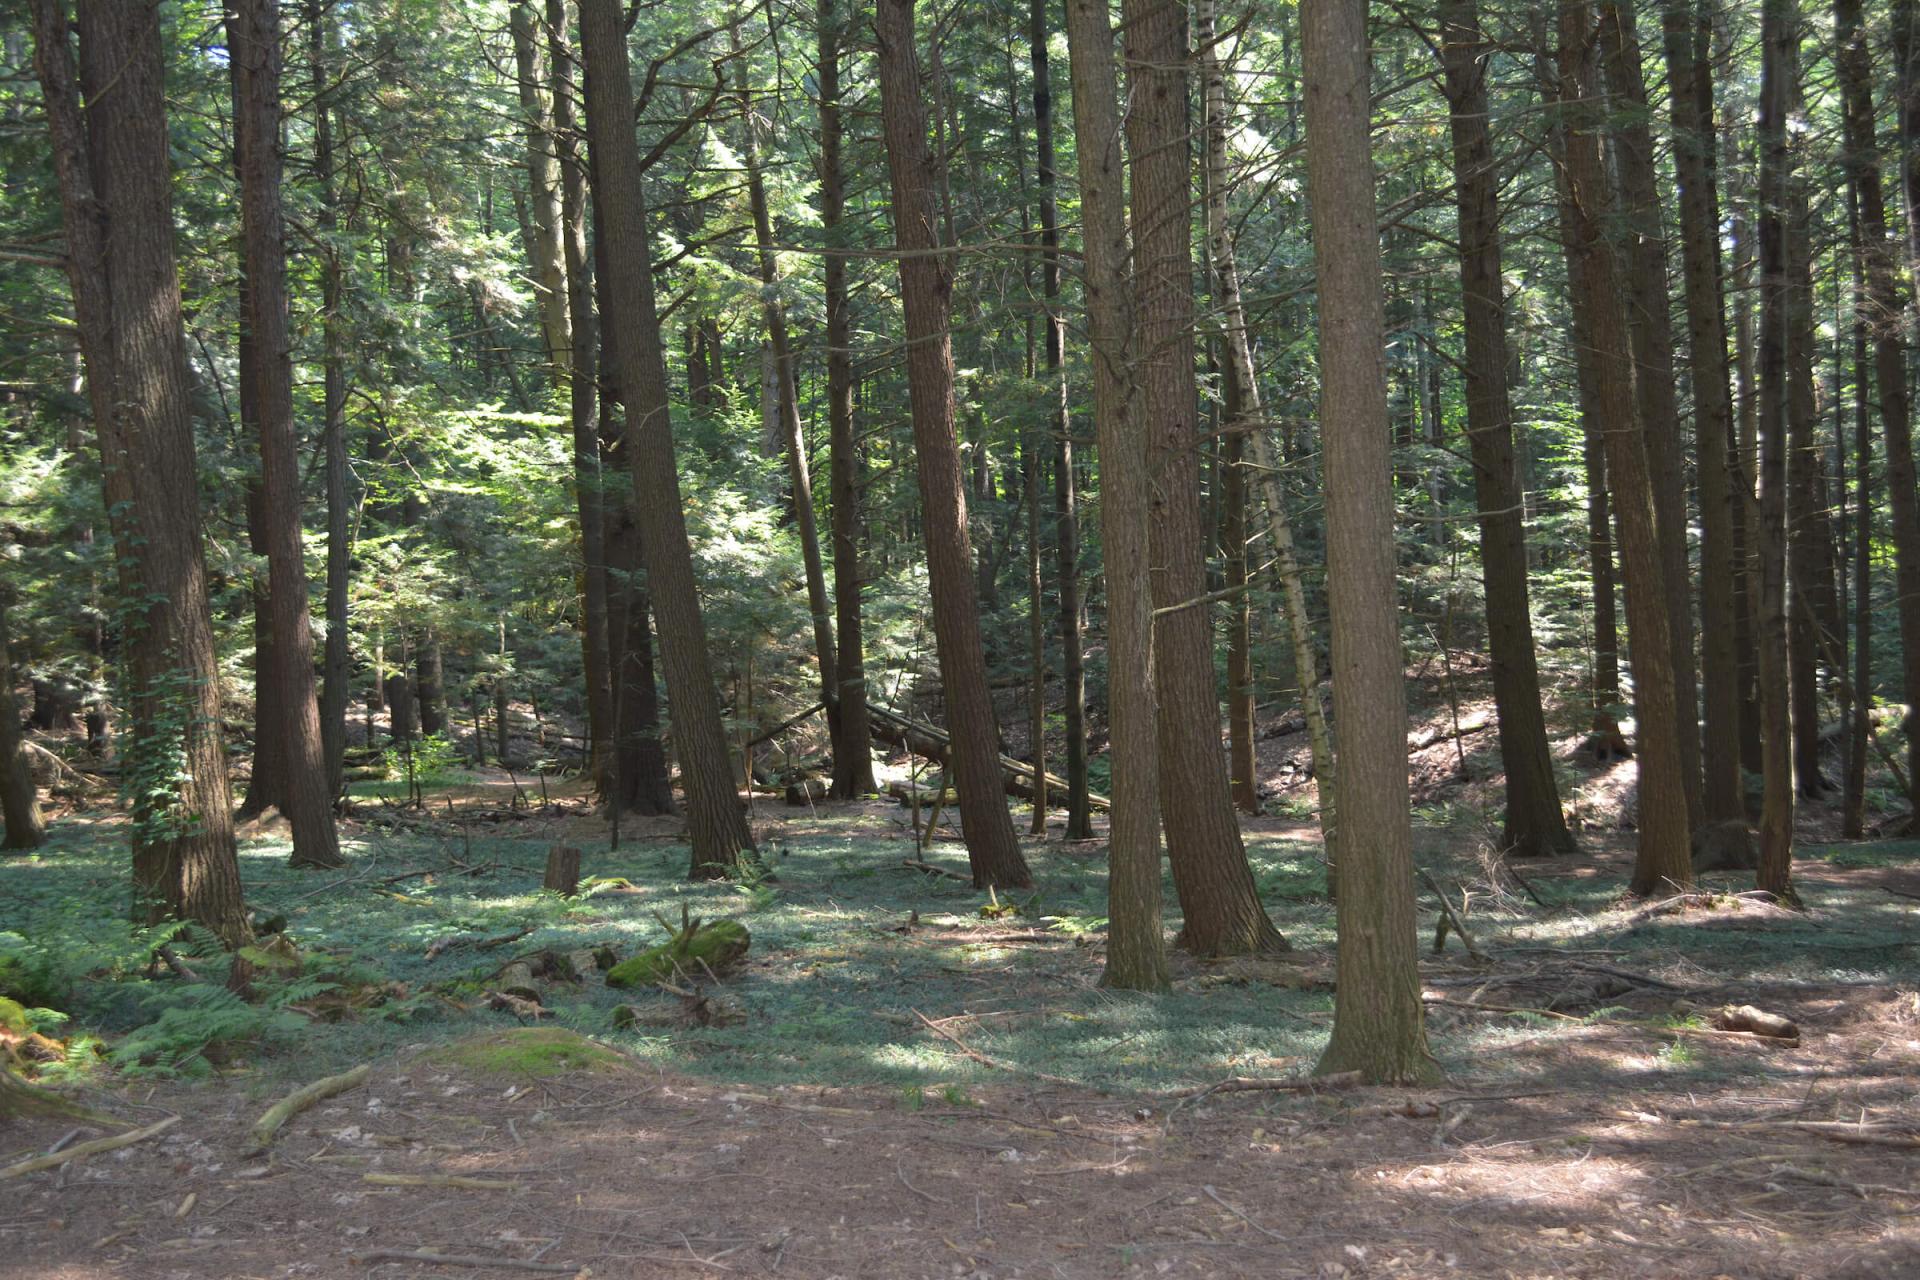 A dense hardwood forest.